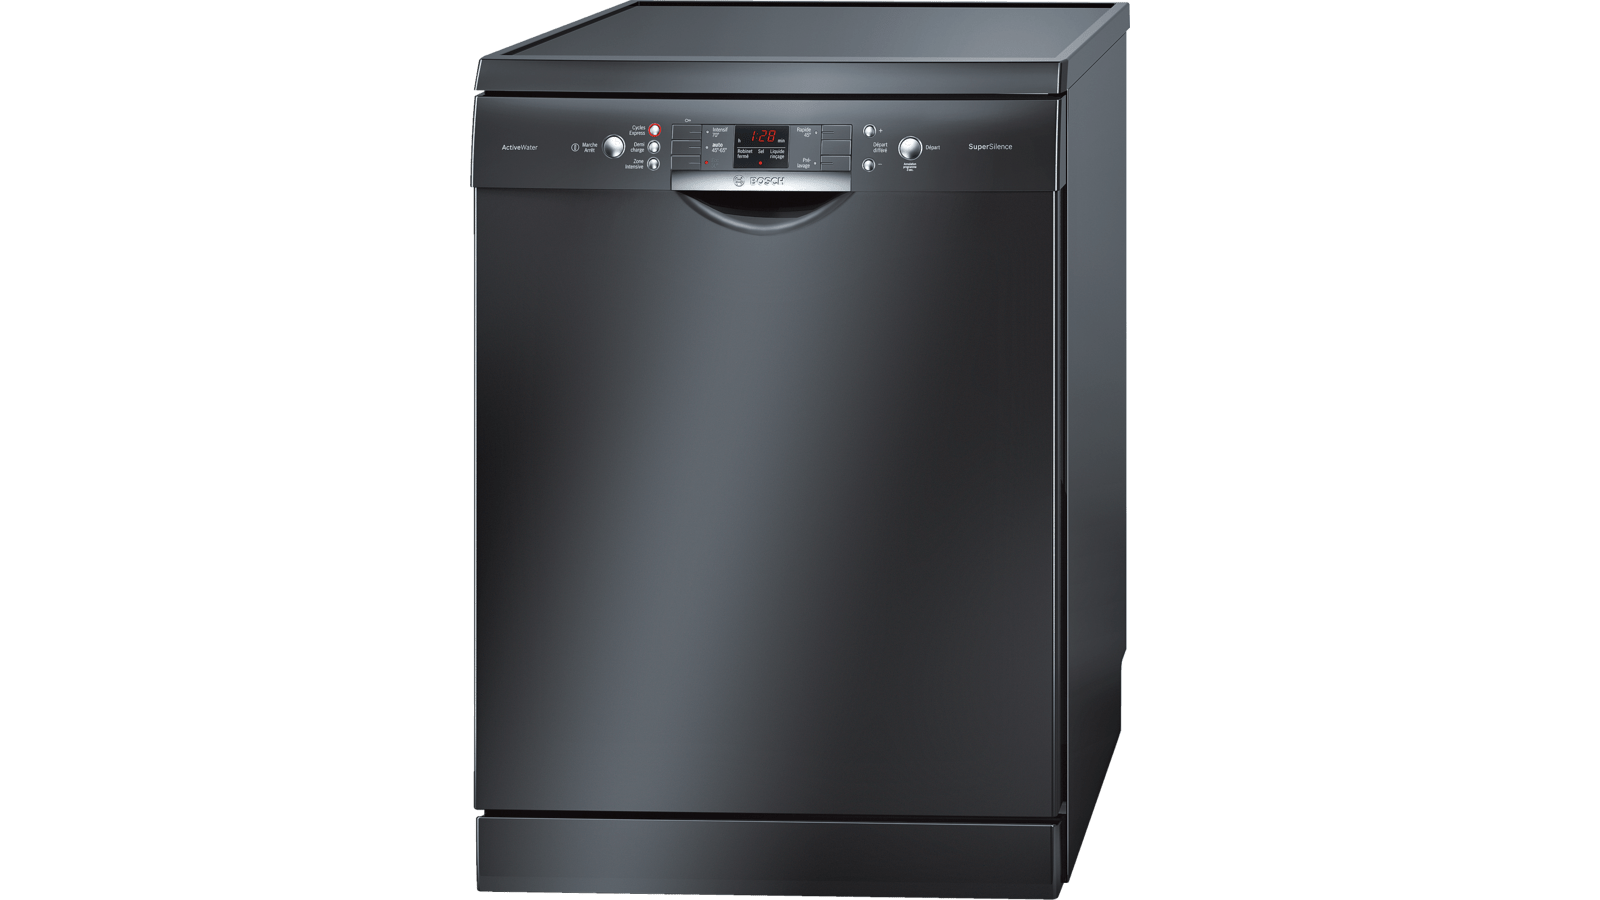 Посудомоечная машина Bosch Silence Plus. Bosch посудомоечная машина черная отдельностоящая 60 см. Посудомоечная машина Bosch SMS 63m42. Посудомоечная машина бош 45 см отдельностоящая. Посудомоечная машина горенье отдельностоящая